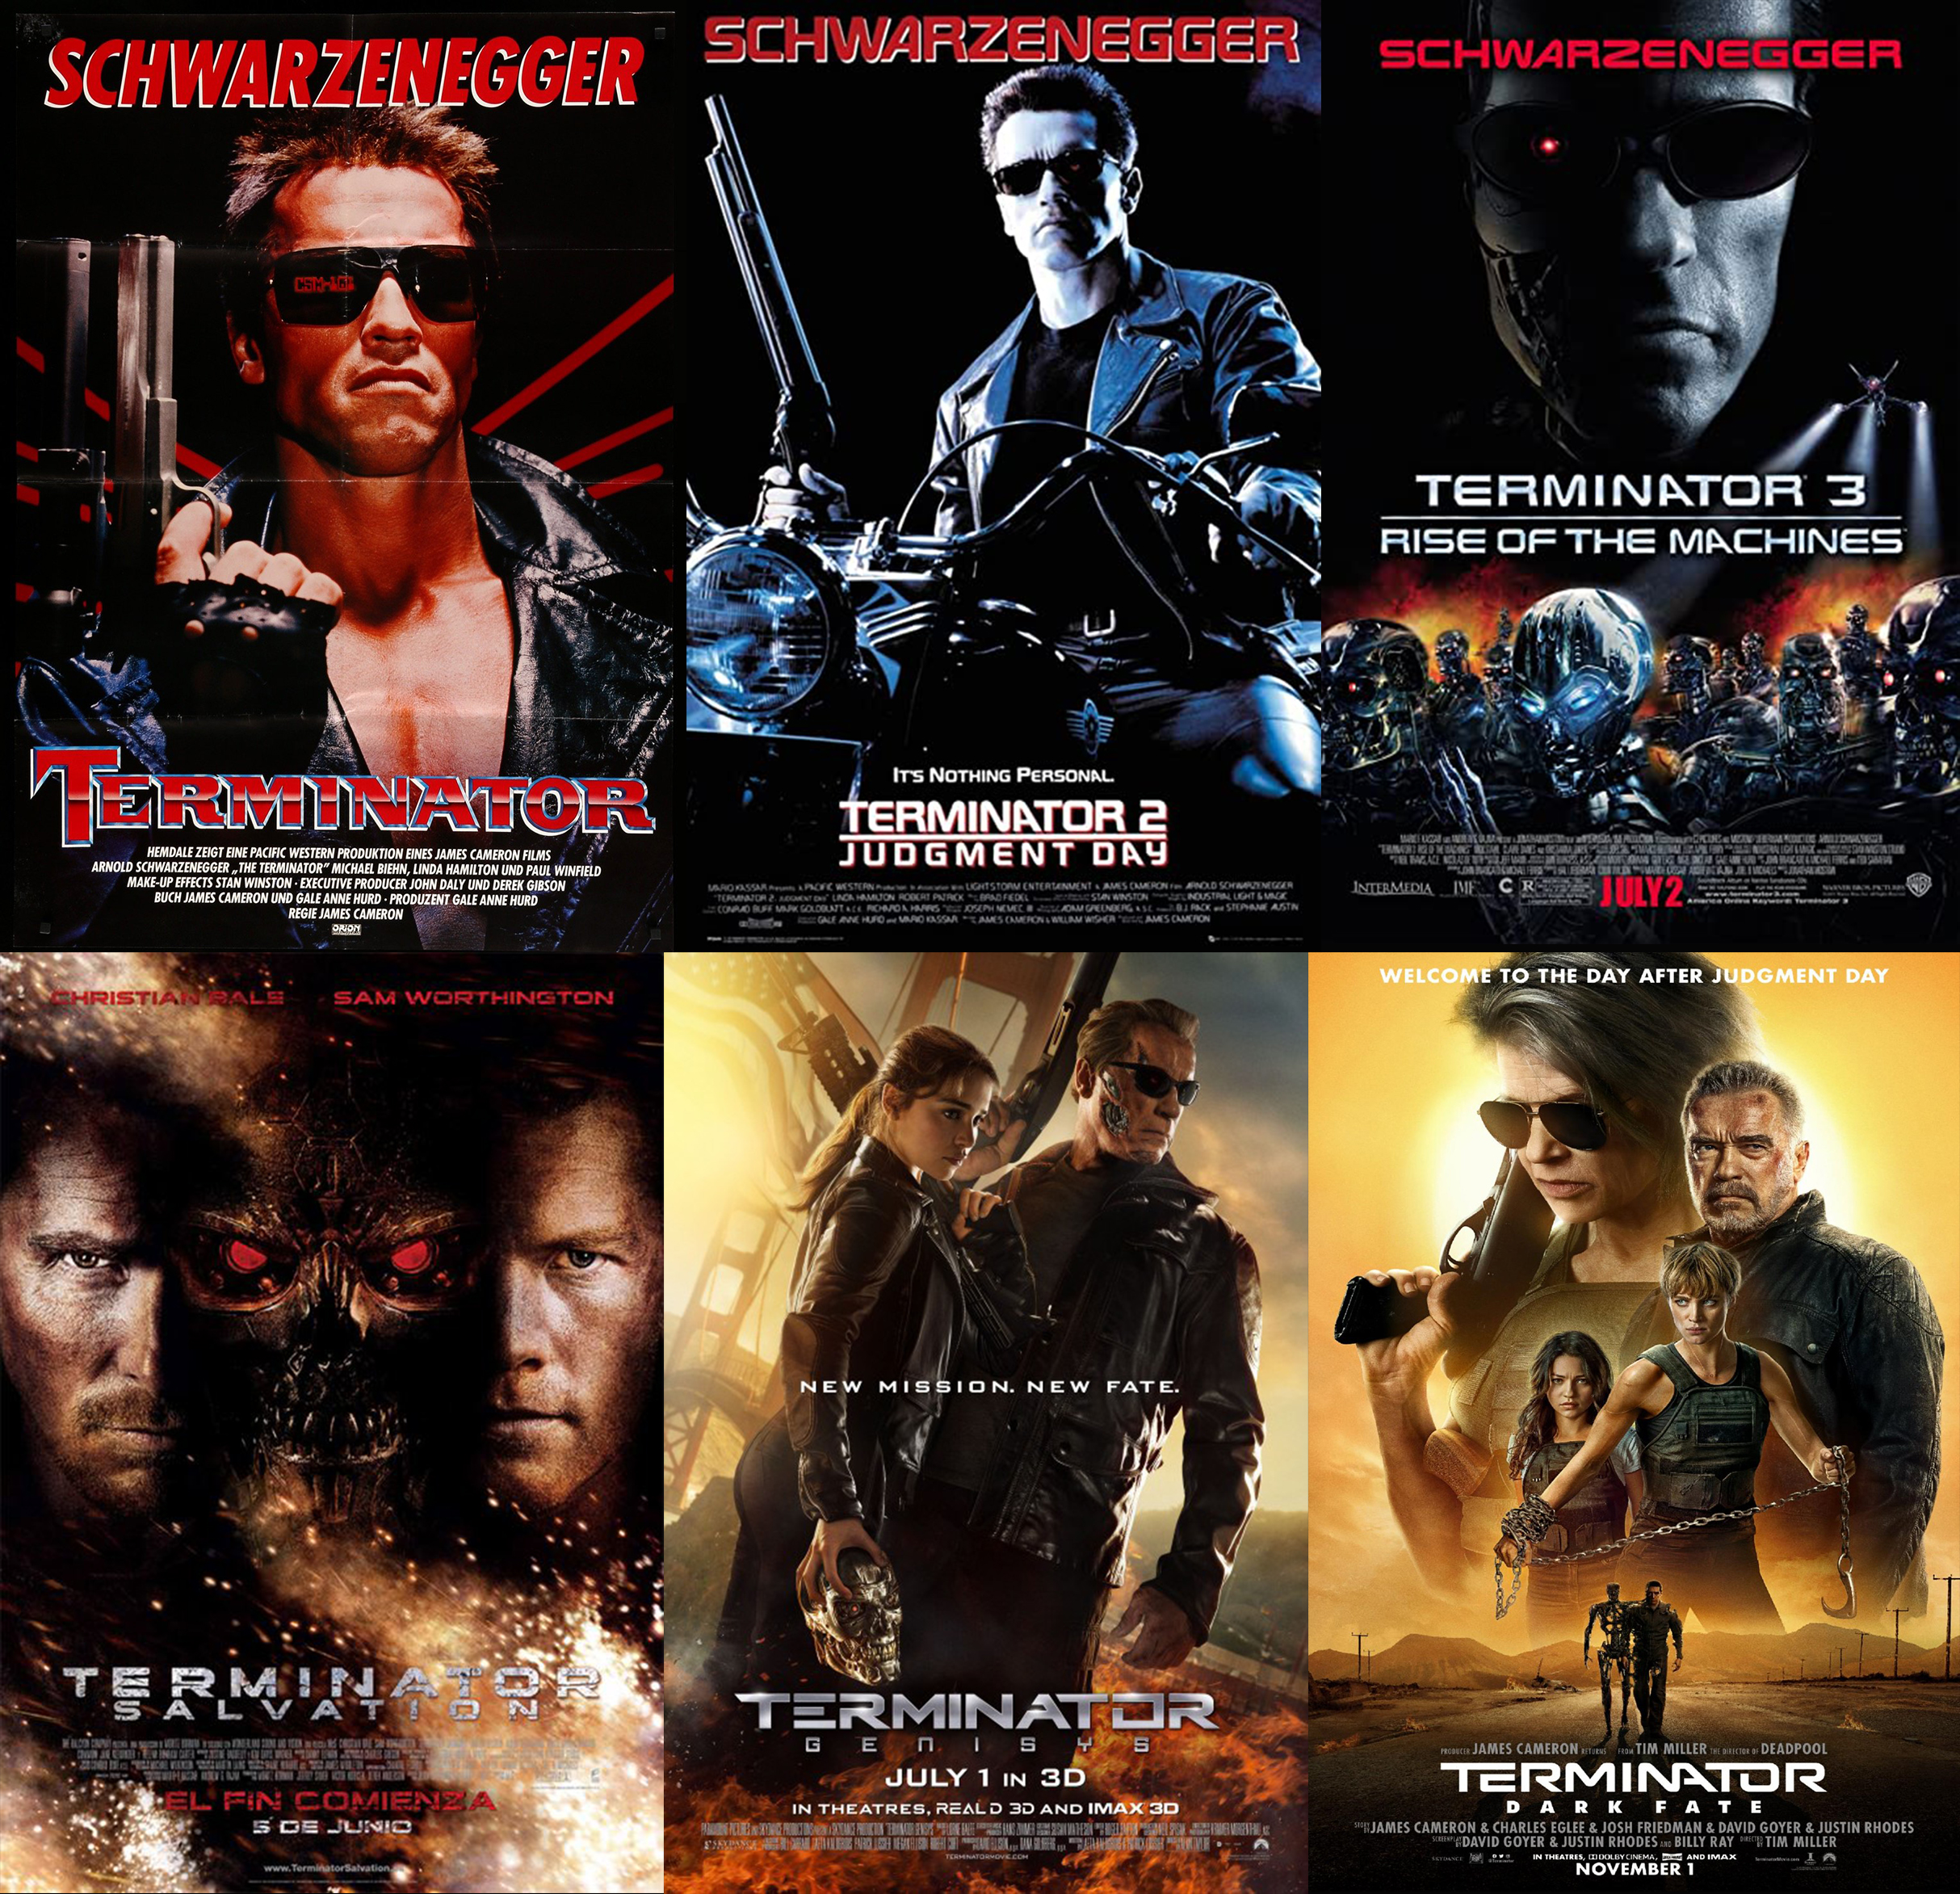 Descargar la Saga Terminator (El Exterminator) MP4 HD 720p Latino